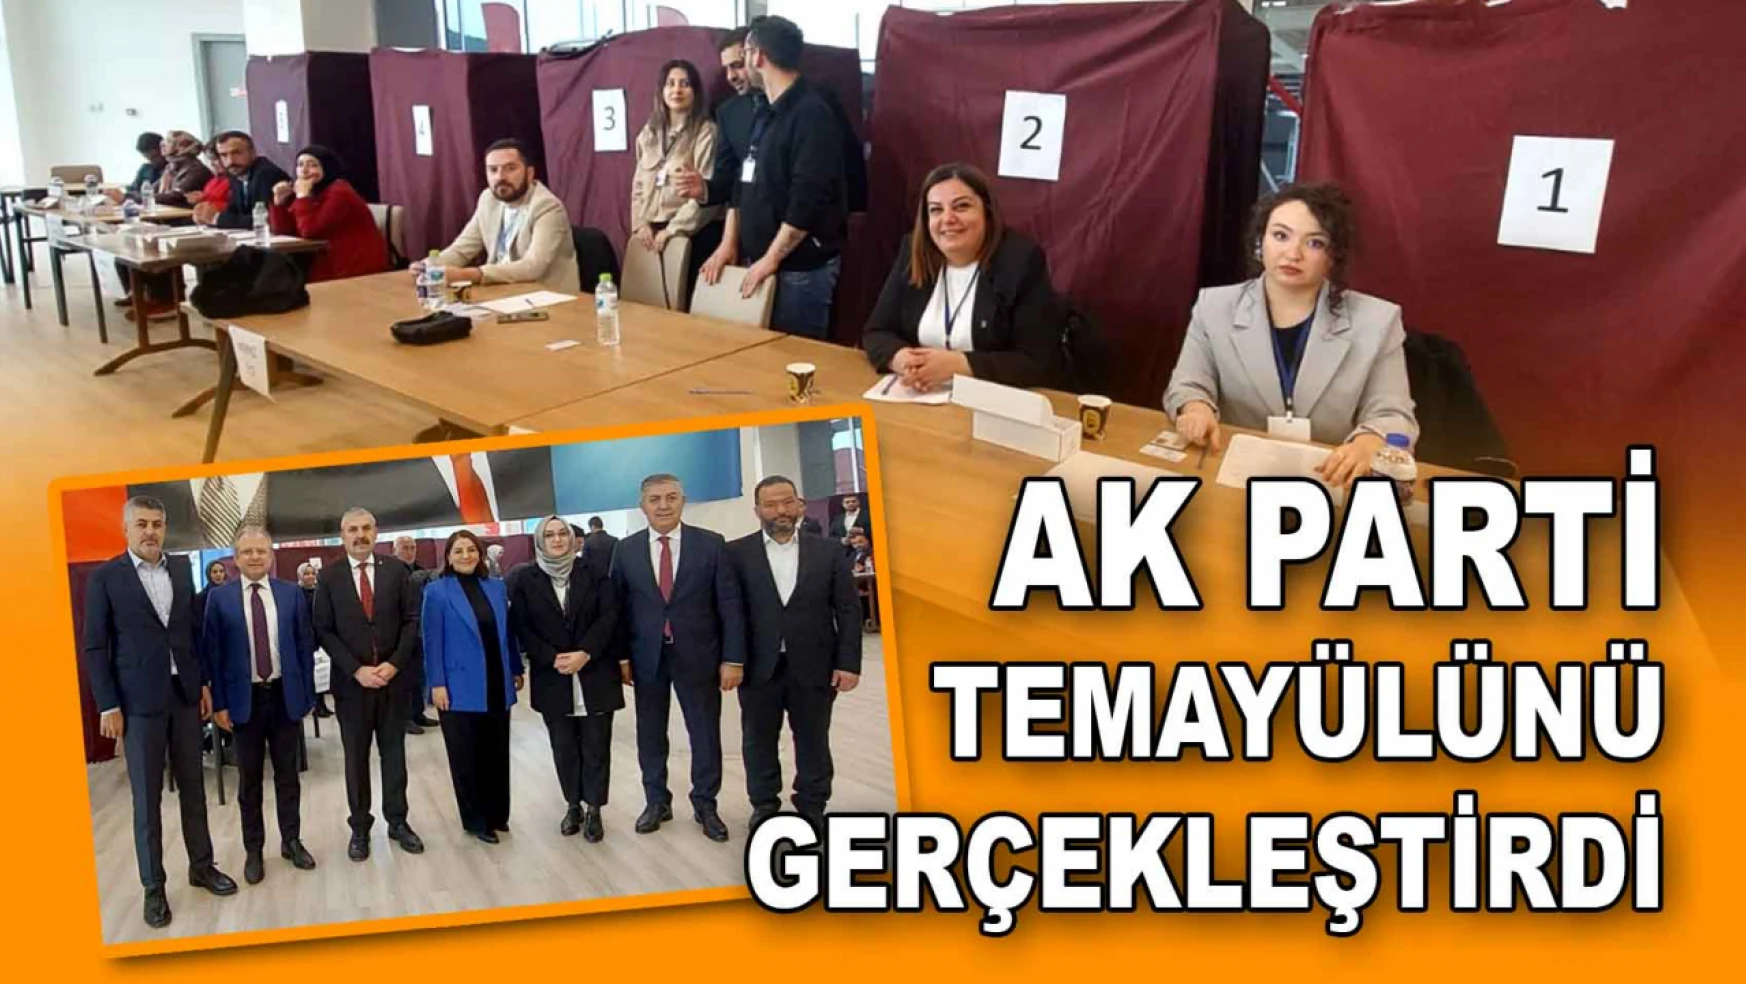 AK Parti Kastamonu Temayülünü Yaptı